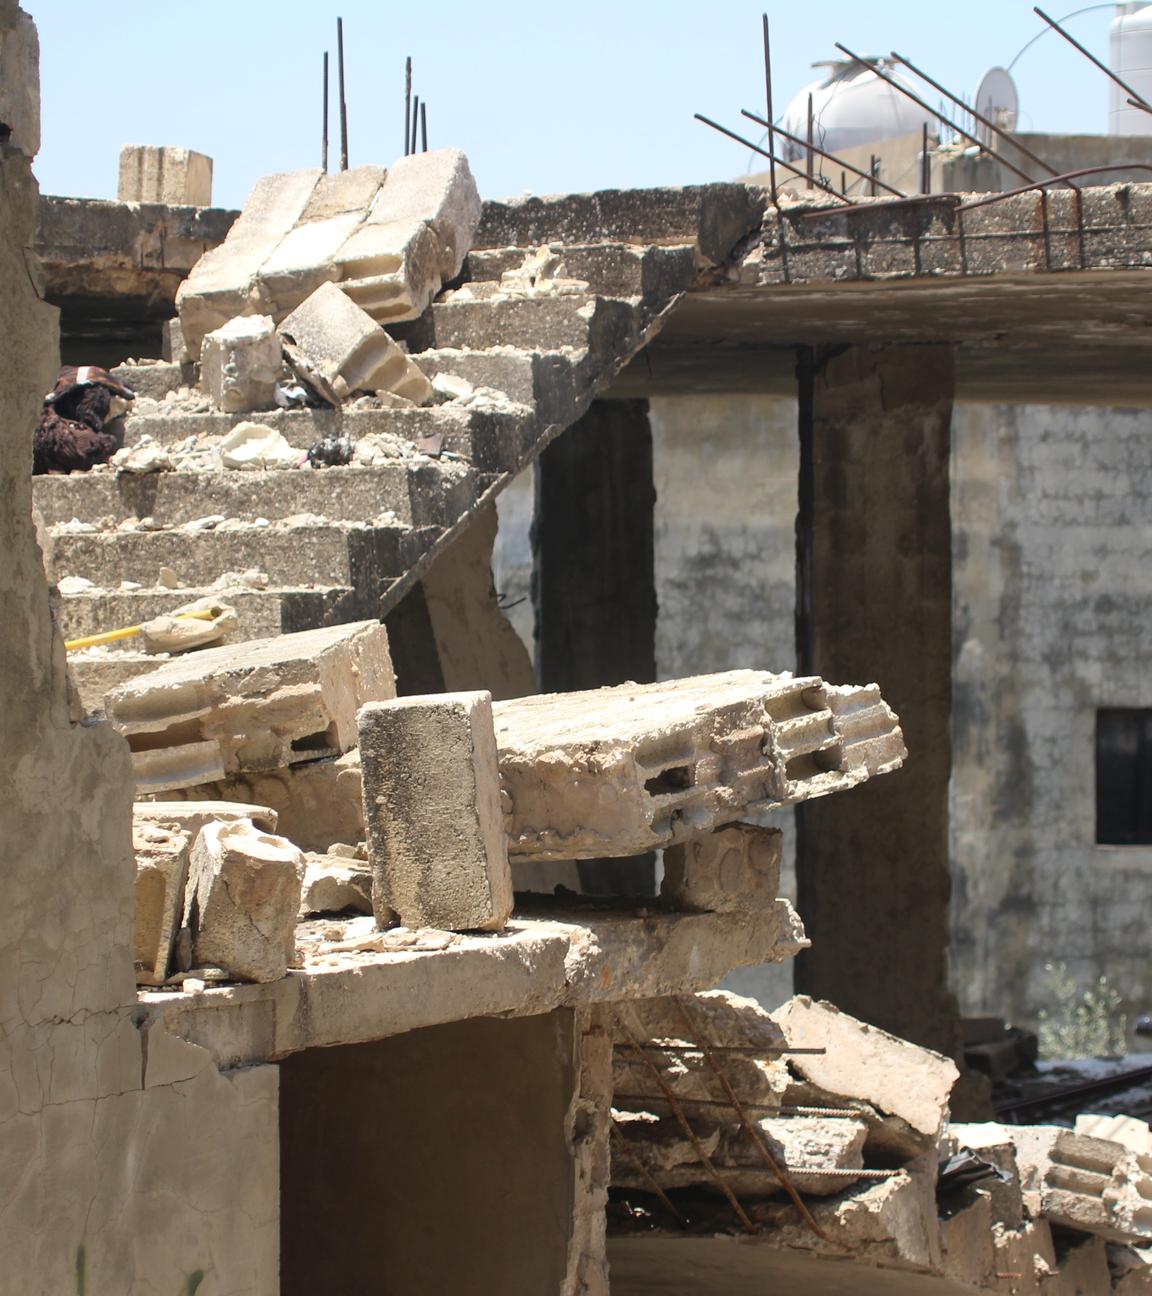  Libanon, Kafr Kila: Ein Gebäude, das bei einem israelischen Angriff zerstört wurde, ist zu sehen.